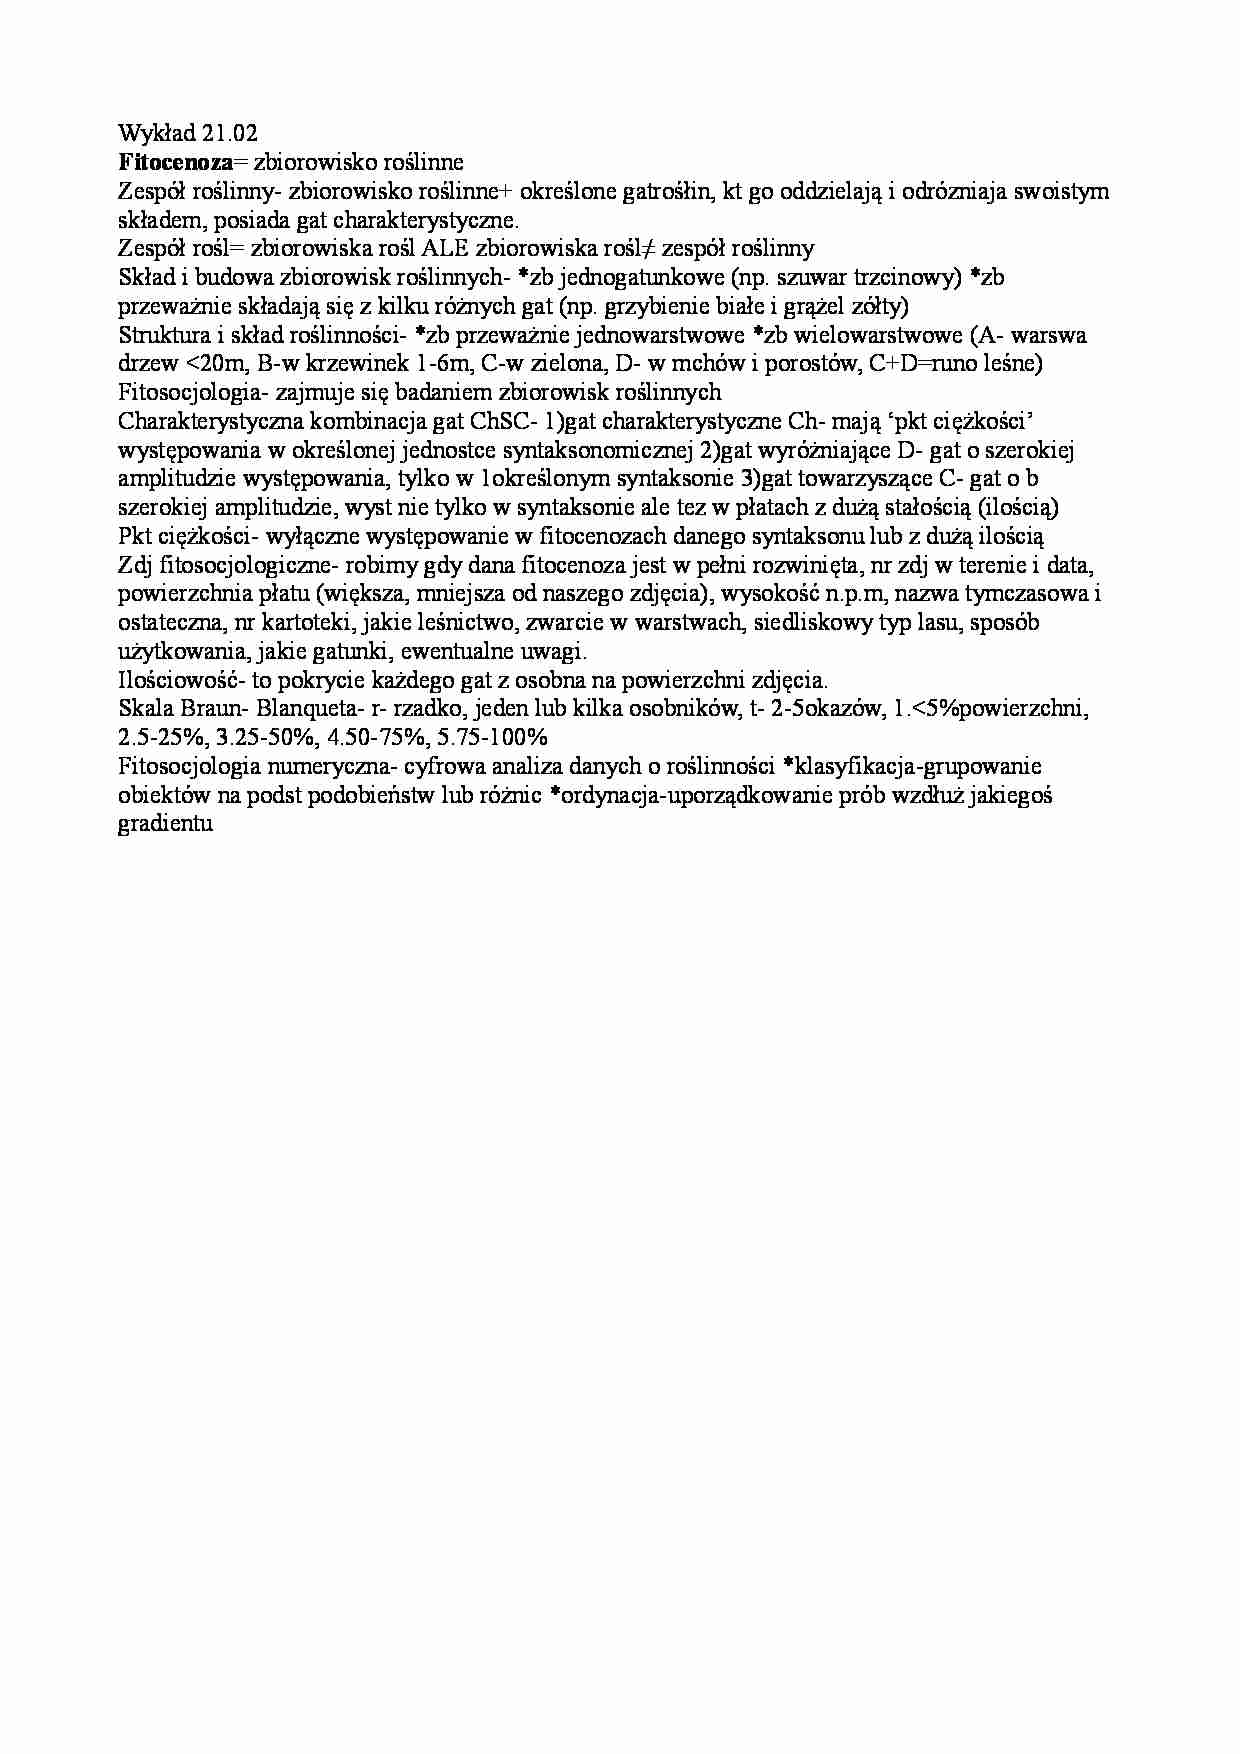 Fitocenoza - wykład - strona 1